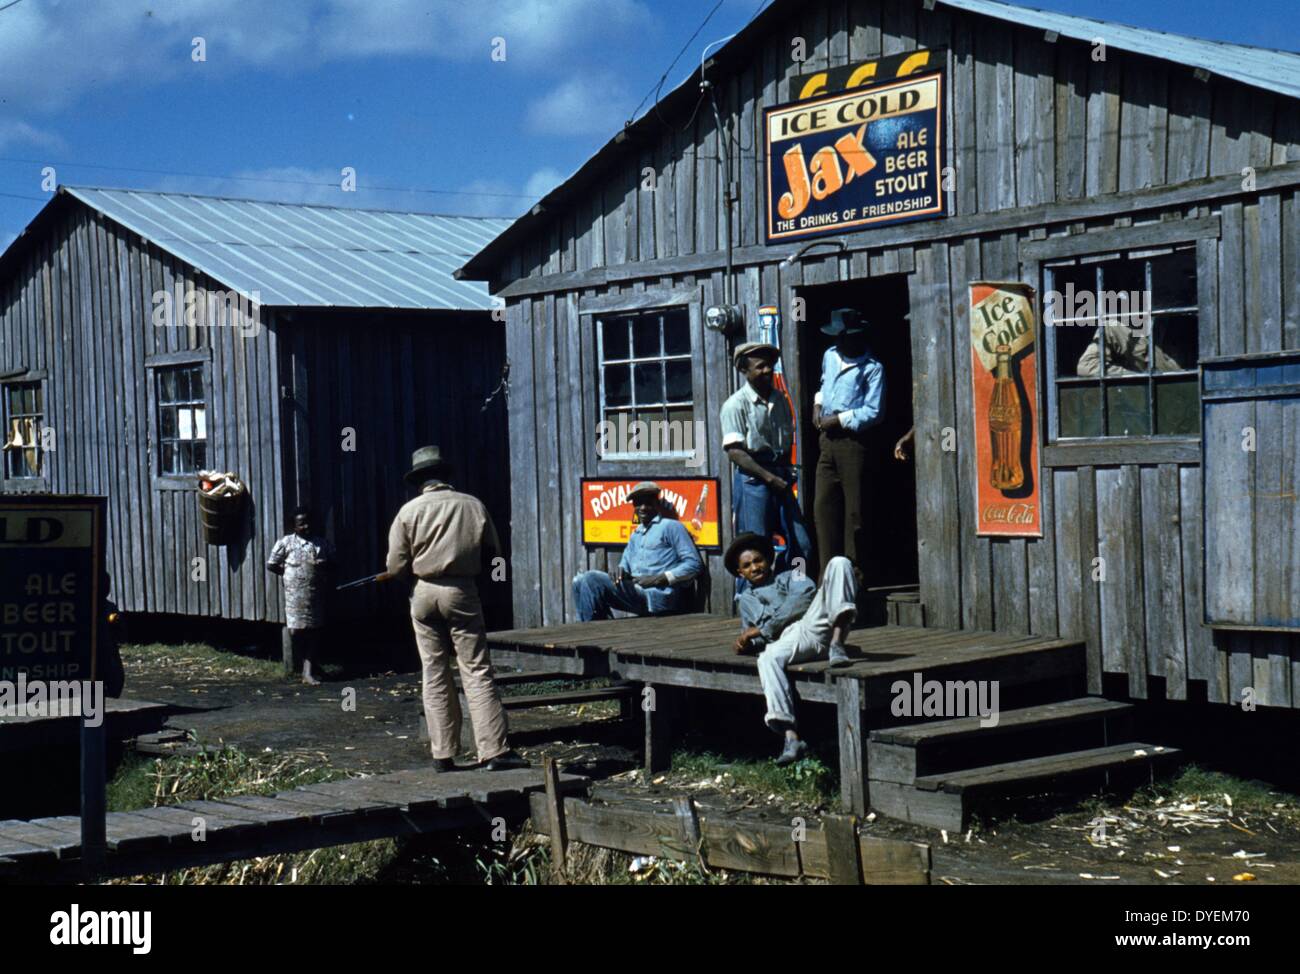 Wohnräume und "Juke Joint' für Wanderarbeiter, um während eines toten Saison sitzen; Belle Glade, Florida, USA. 1941. Foto zeigt Mann stehend mit Gewehr nach links. Zeichen werben Ice Cold Jax Ale Stout Bier und Eis kalte Coca Cola. Stockfoto